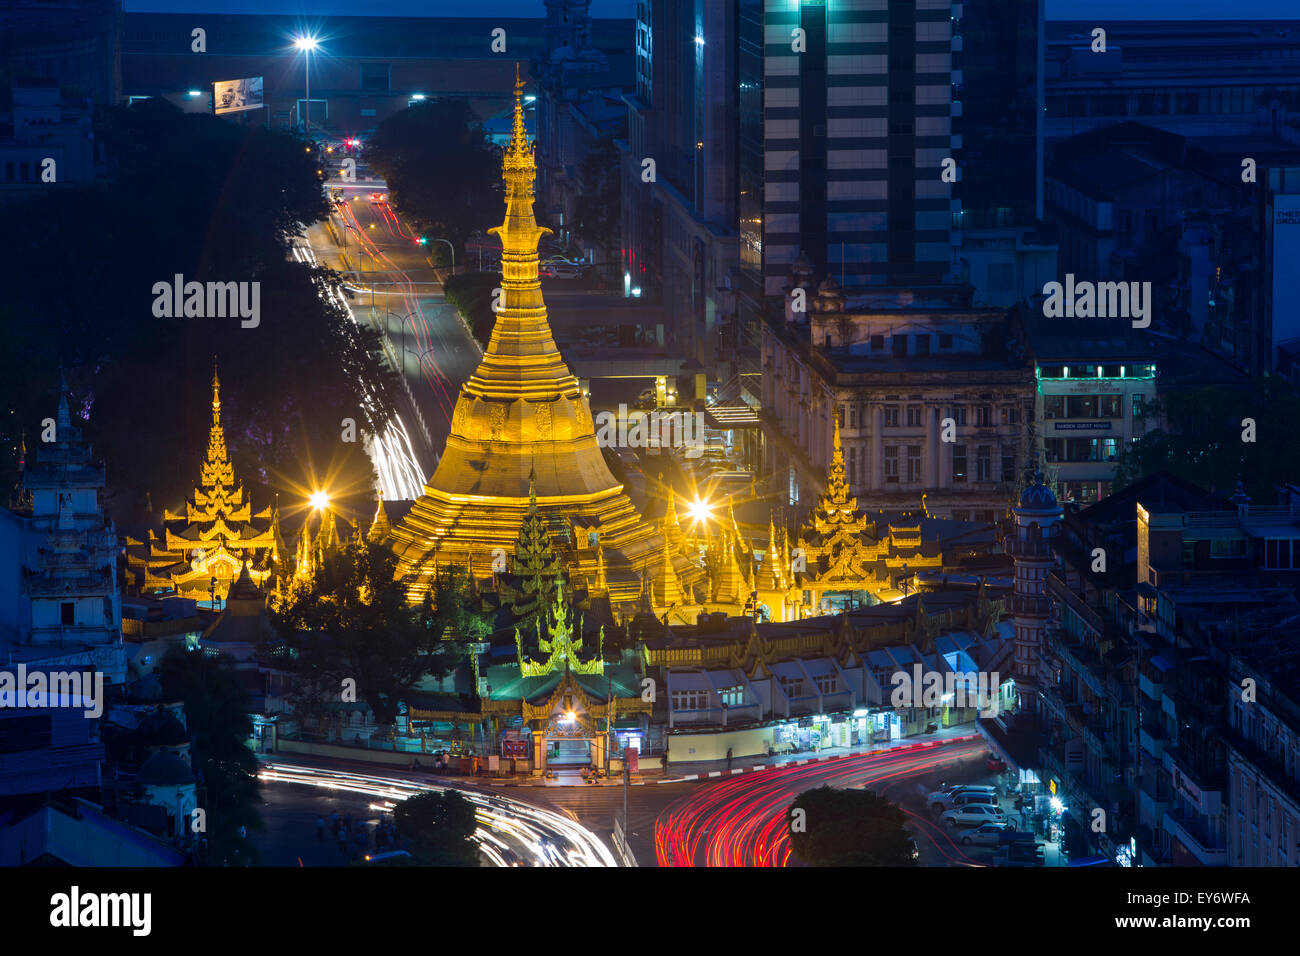 La pagoda de Sule, en la noche de Sakura Tower Sky Bar, Yangon, Myanmar Foto de stock